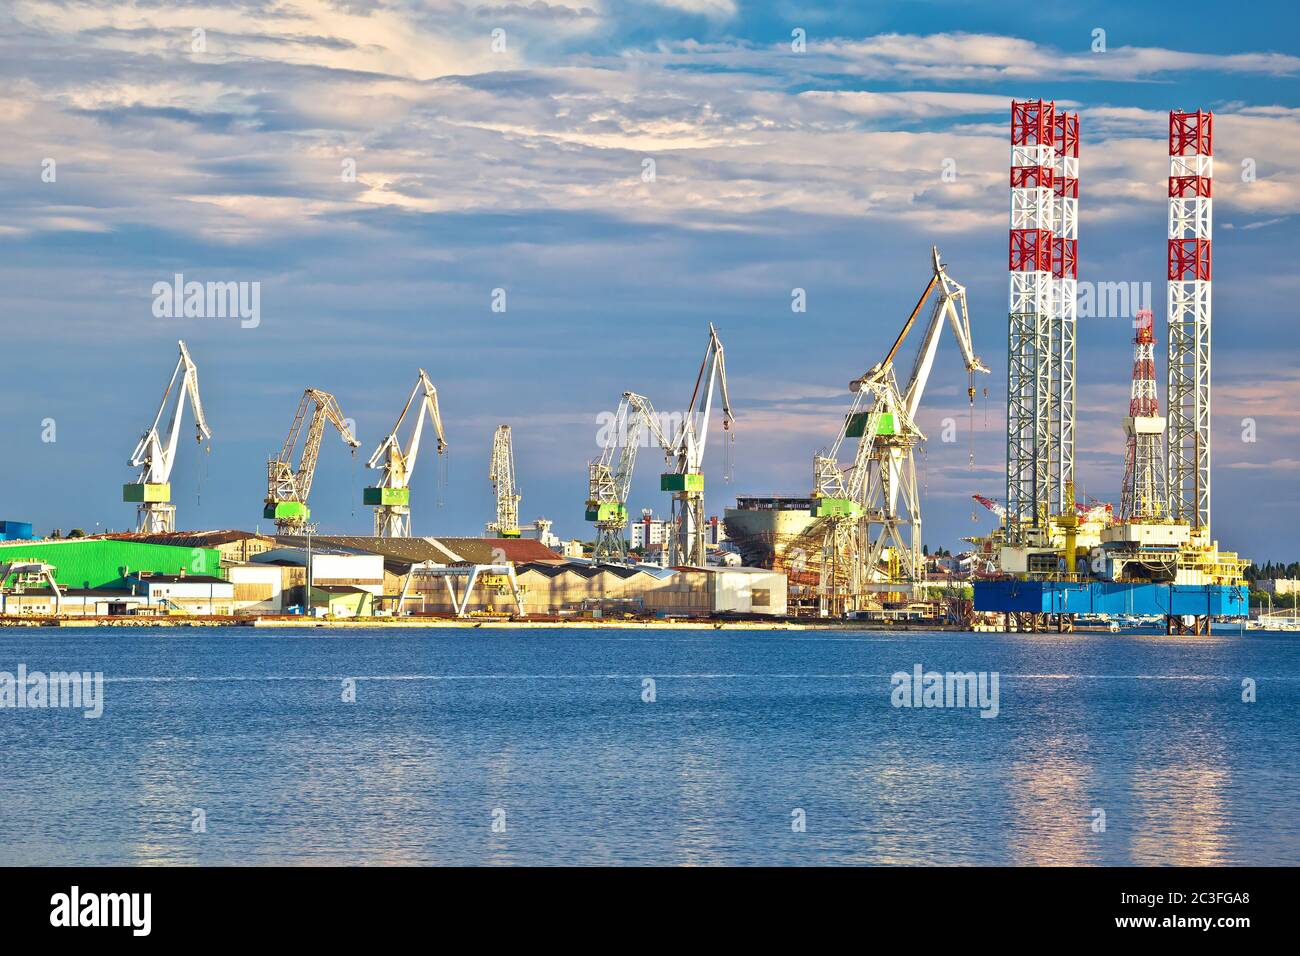 Ciudad de Pula grullas de astillero vista desde el mar Foto de stock